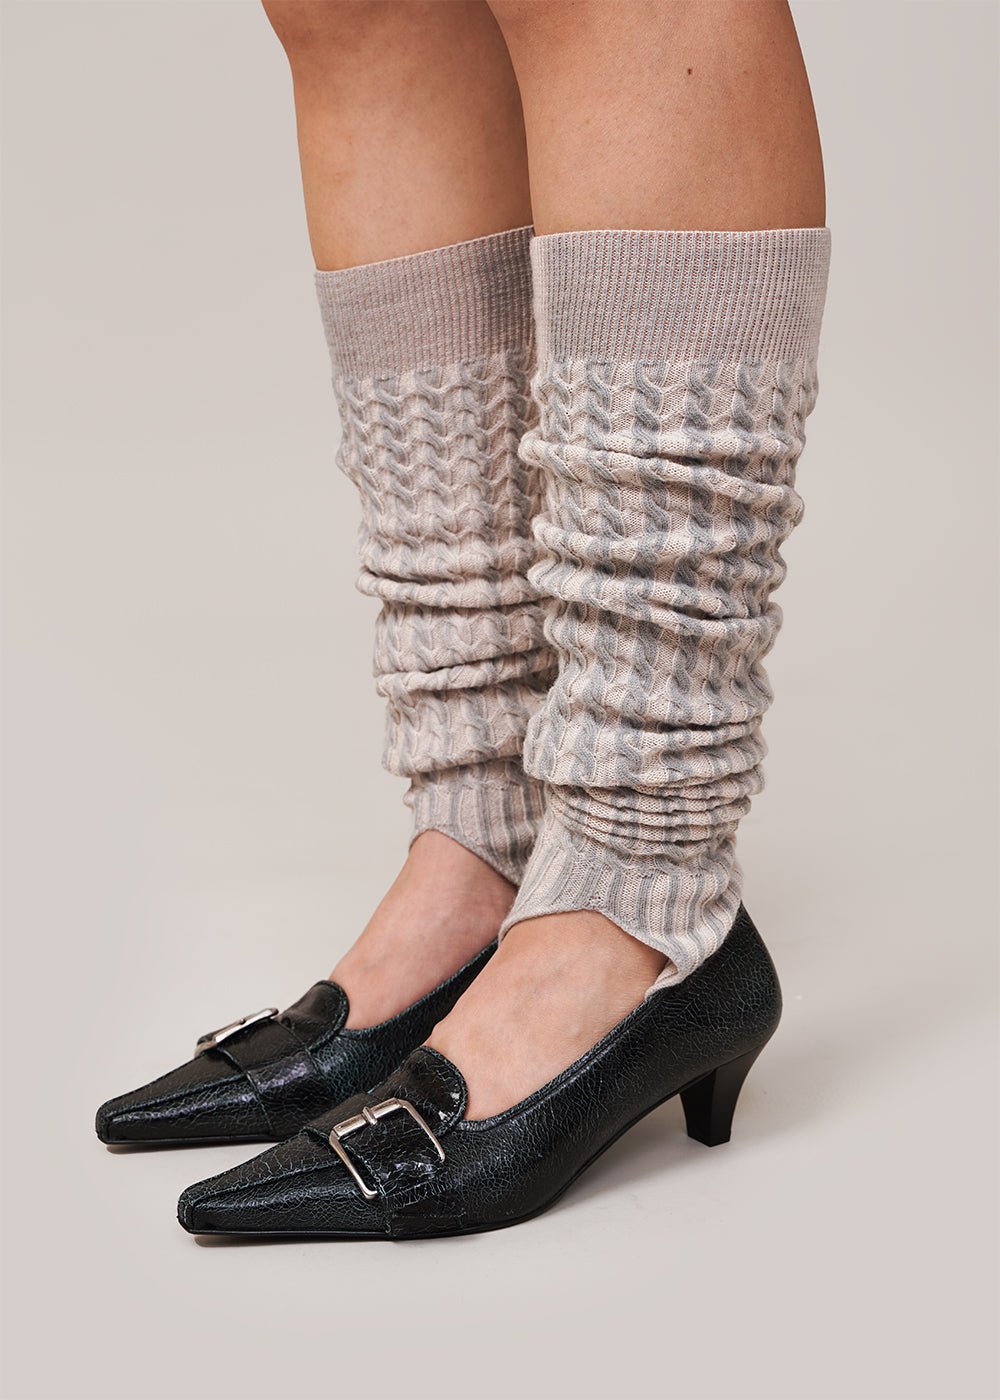  TODO Warm Wool Women's Leg Warmers - Soft, Flexible